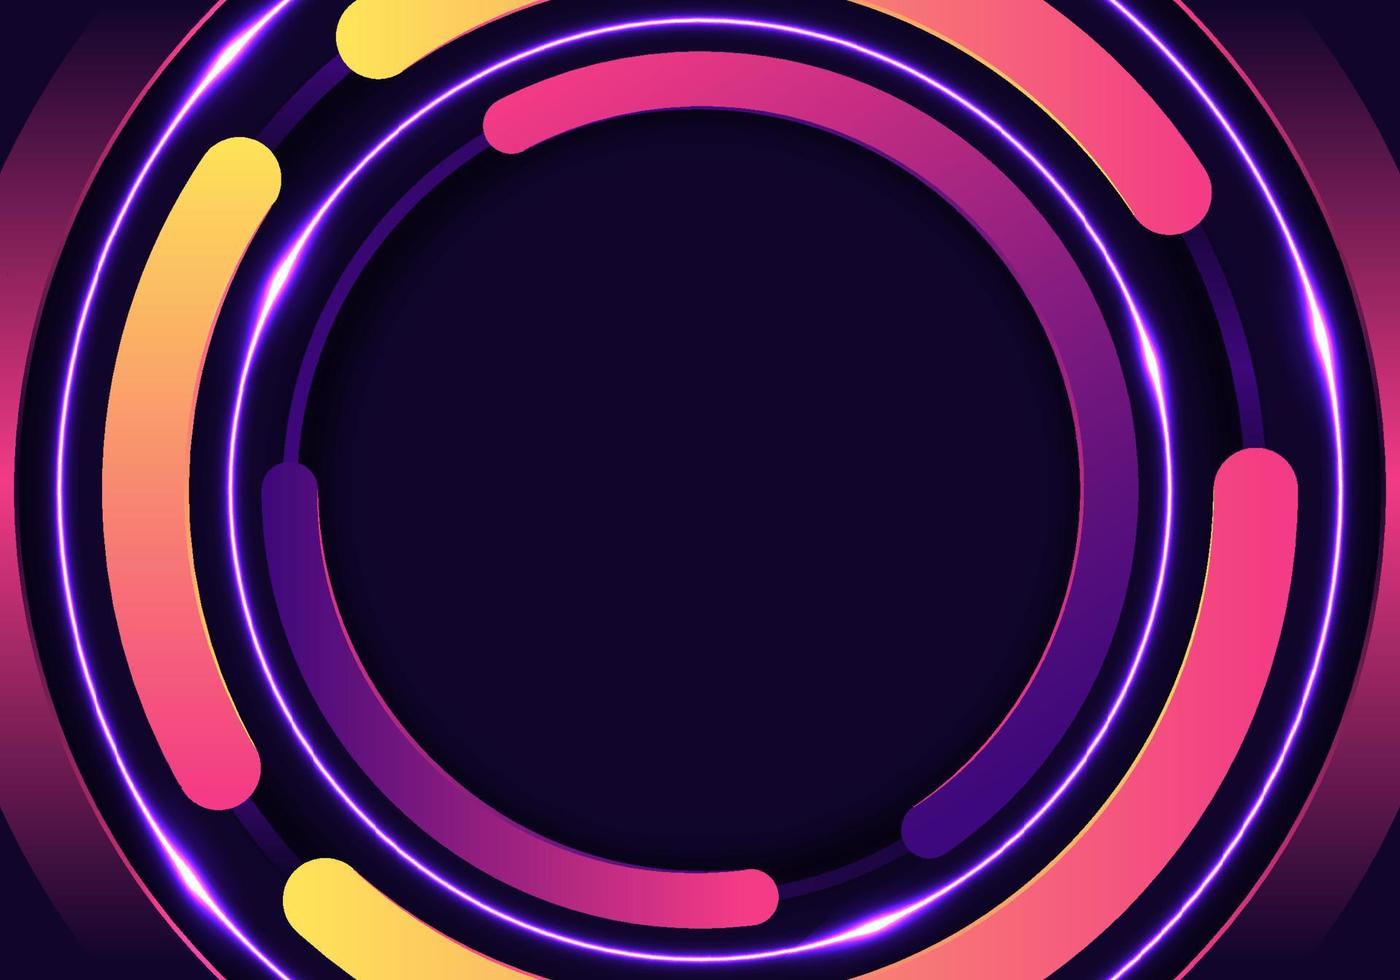 3d círculos de cores brilhantes padrão arredondado com decoração de iluminação neon brilhante em fundo preto vetor